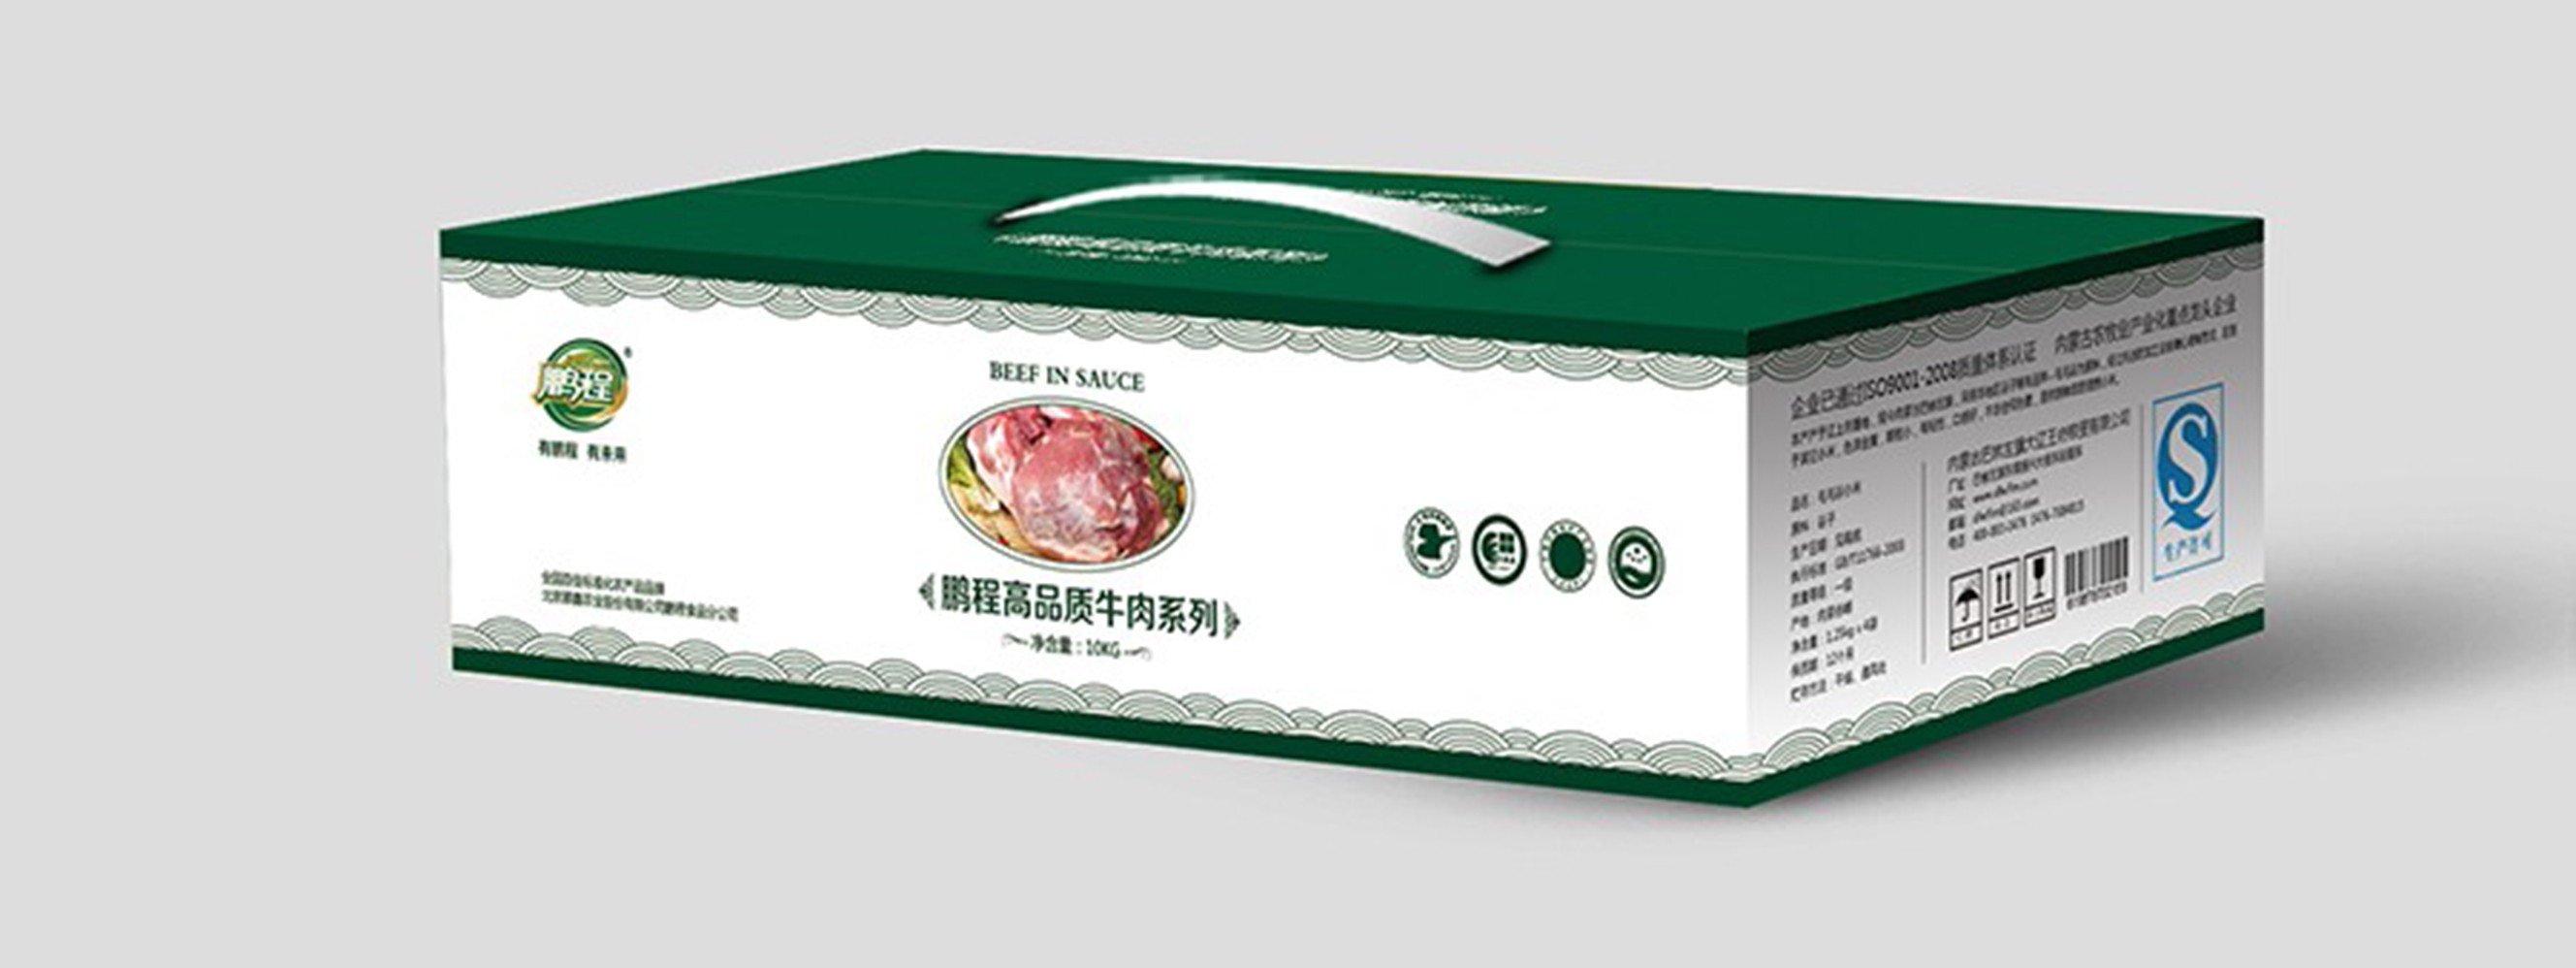 北京顺鑫集团品牌包装设计